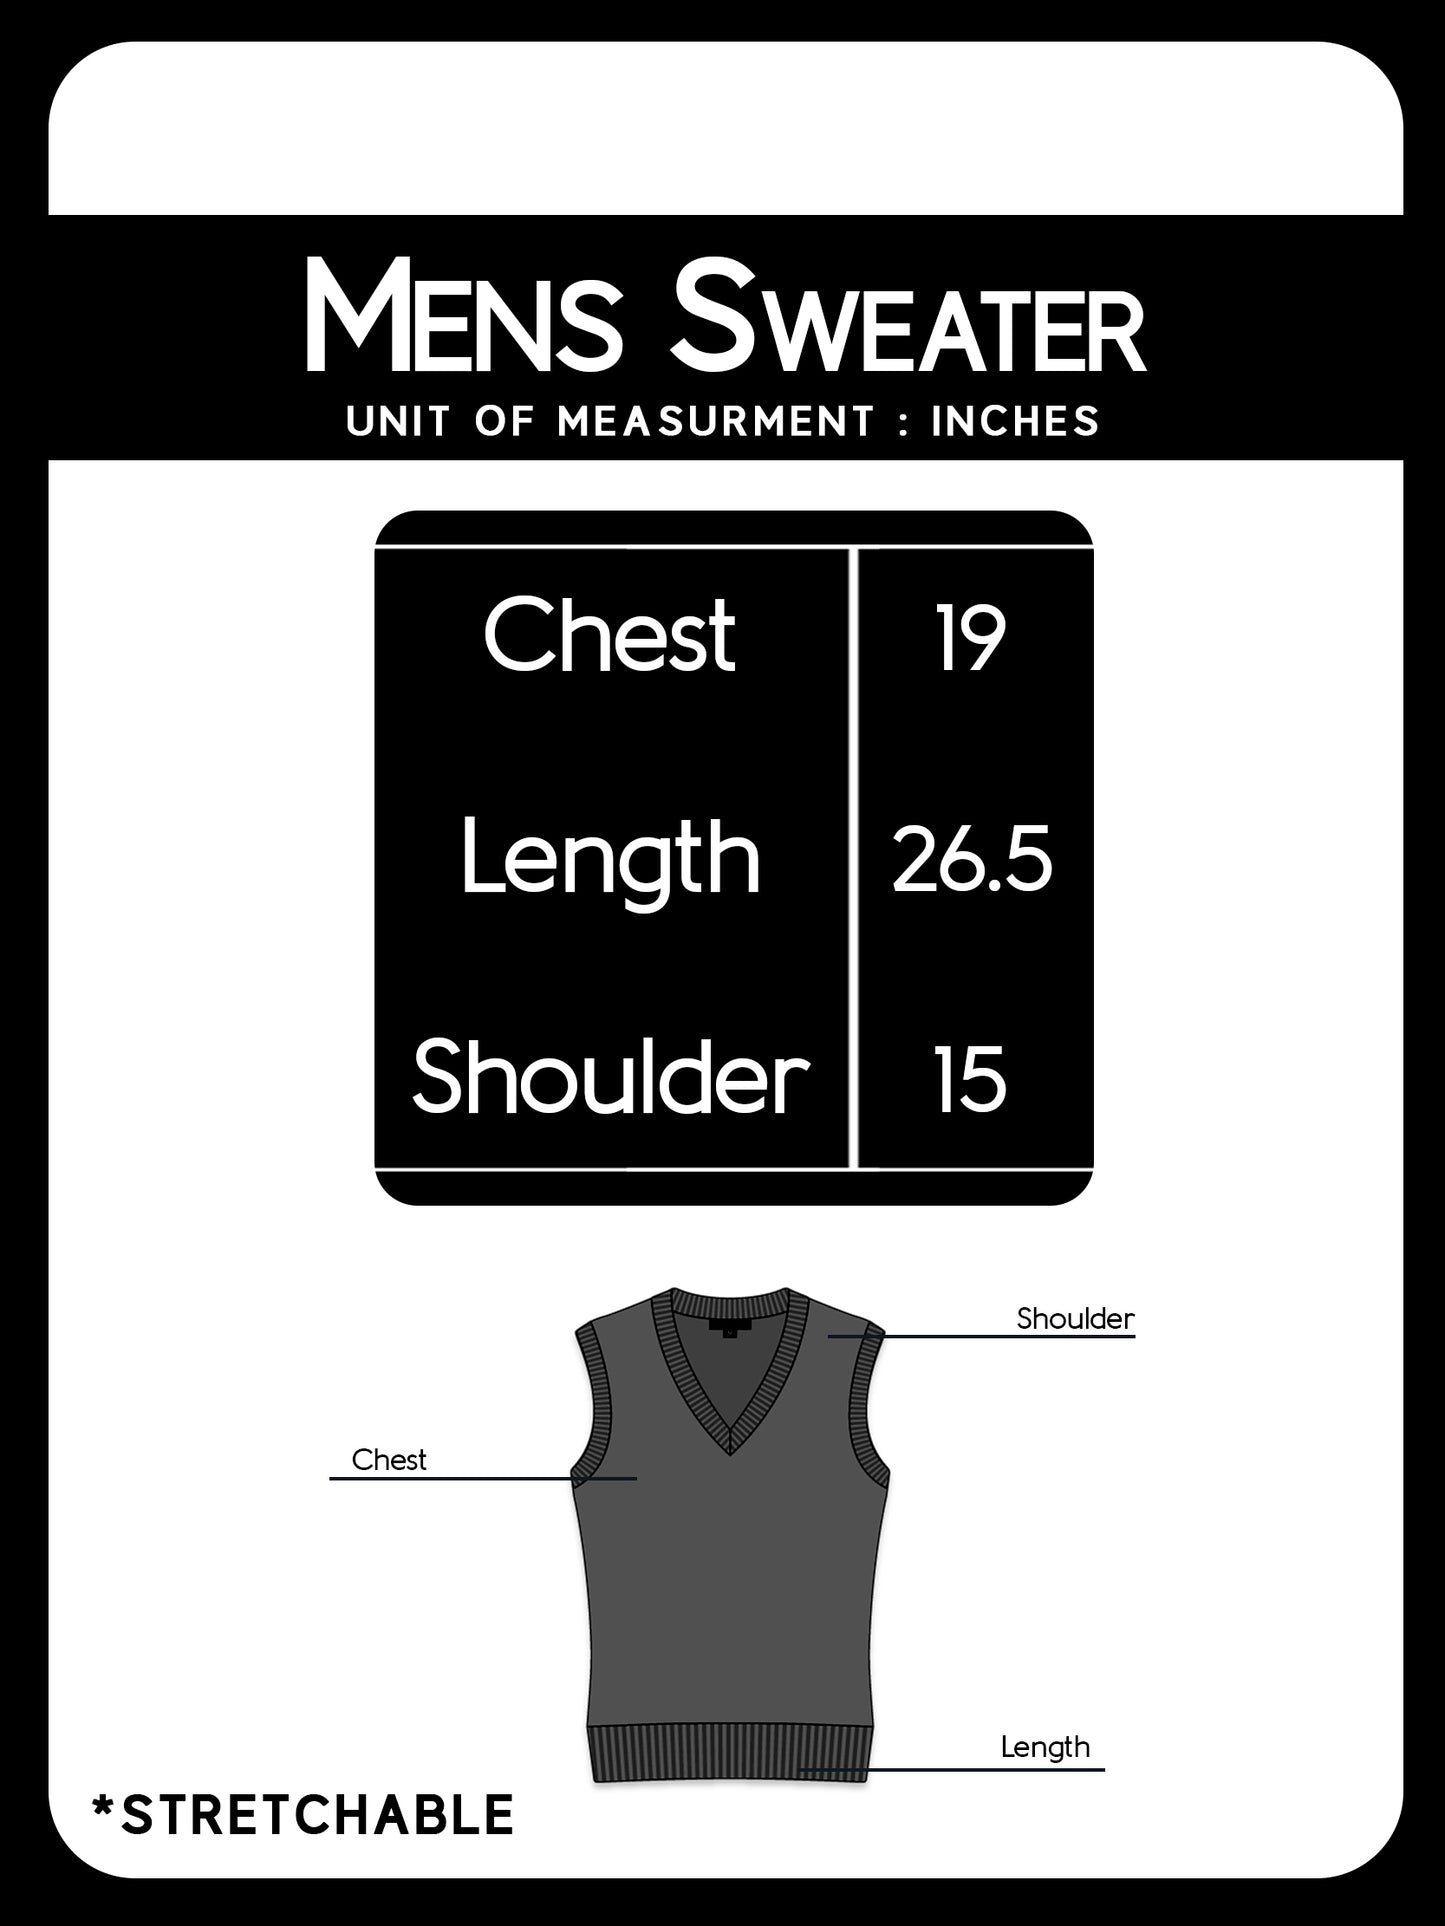 S.H Sleeveless Plain Sweater for Men Maroon